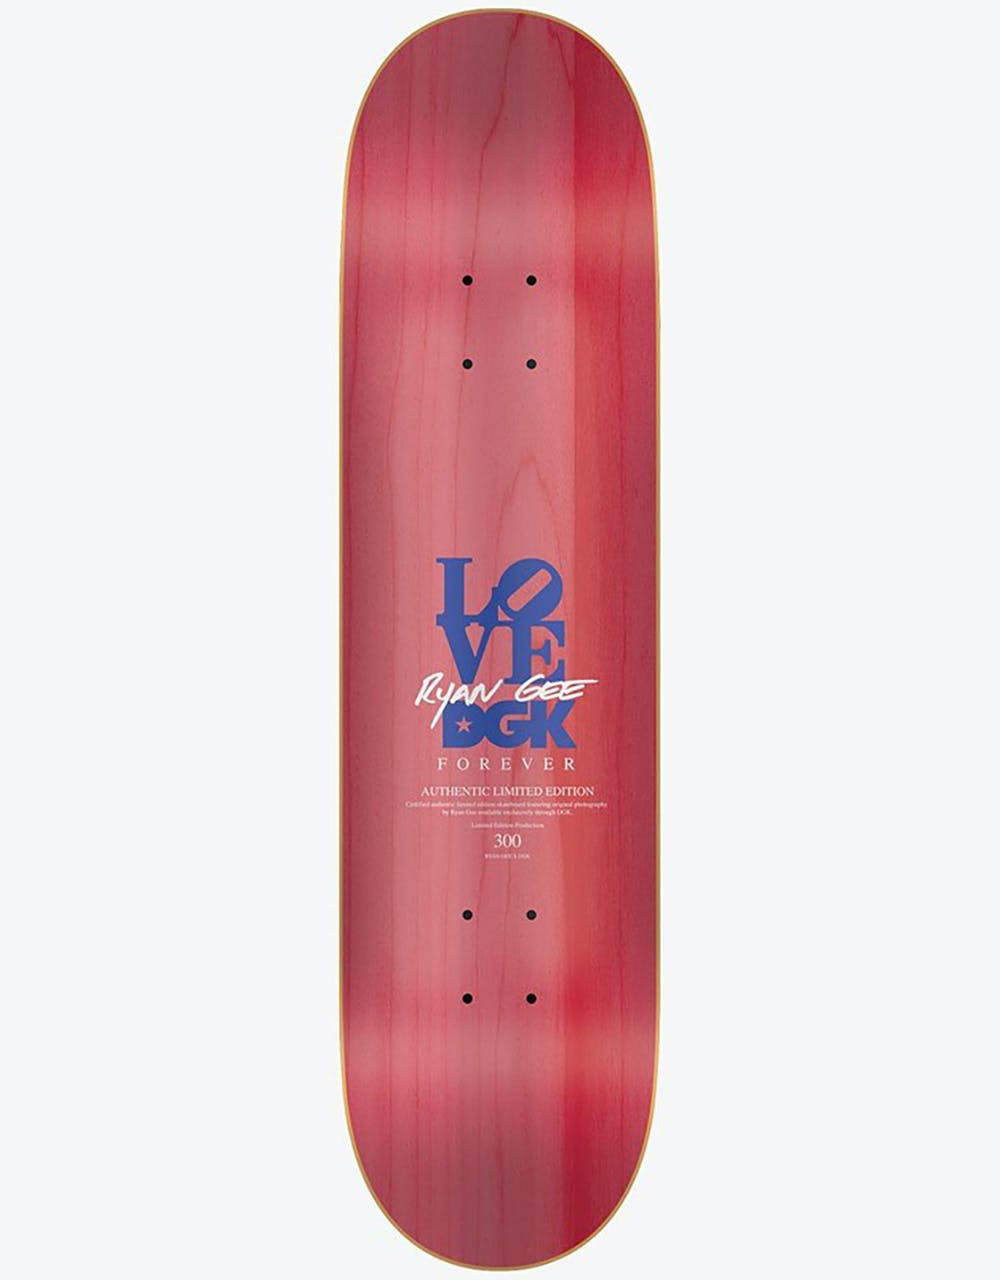 DGK x Ryan Gee Kalis Love Park Photo Ltd Skateboard Deck - 8.1"